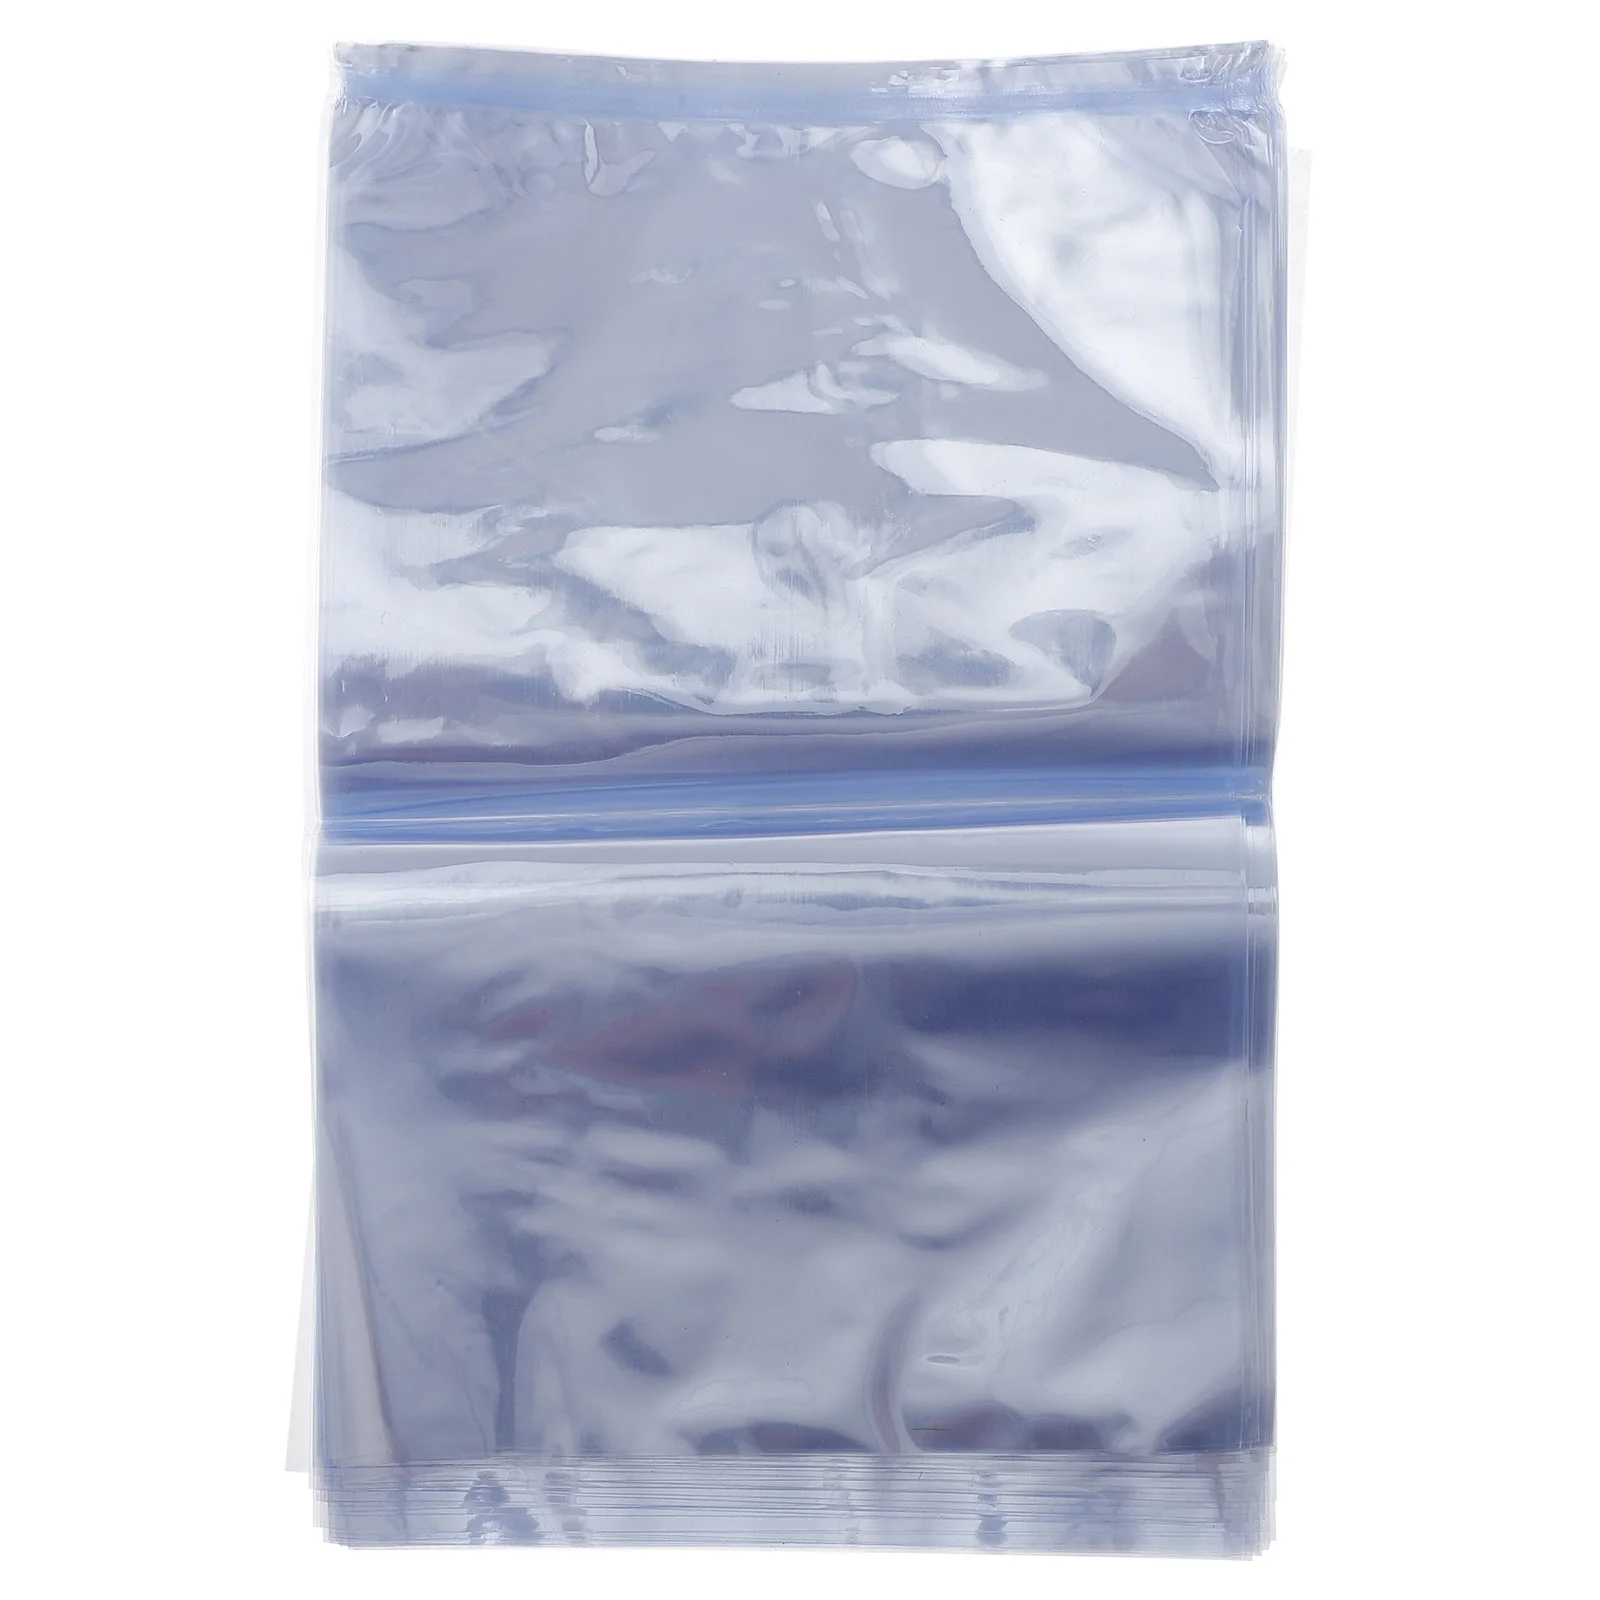 

100 PCS Heat Shrink Film Shrink Wraps for Bottles Cellophane Wrap Bags Shrink Wrapping Shrink Wrap Bags Shrink- Bag